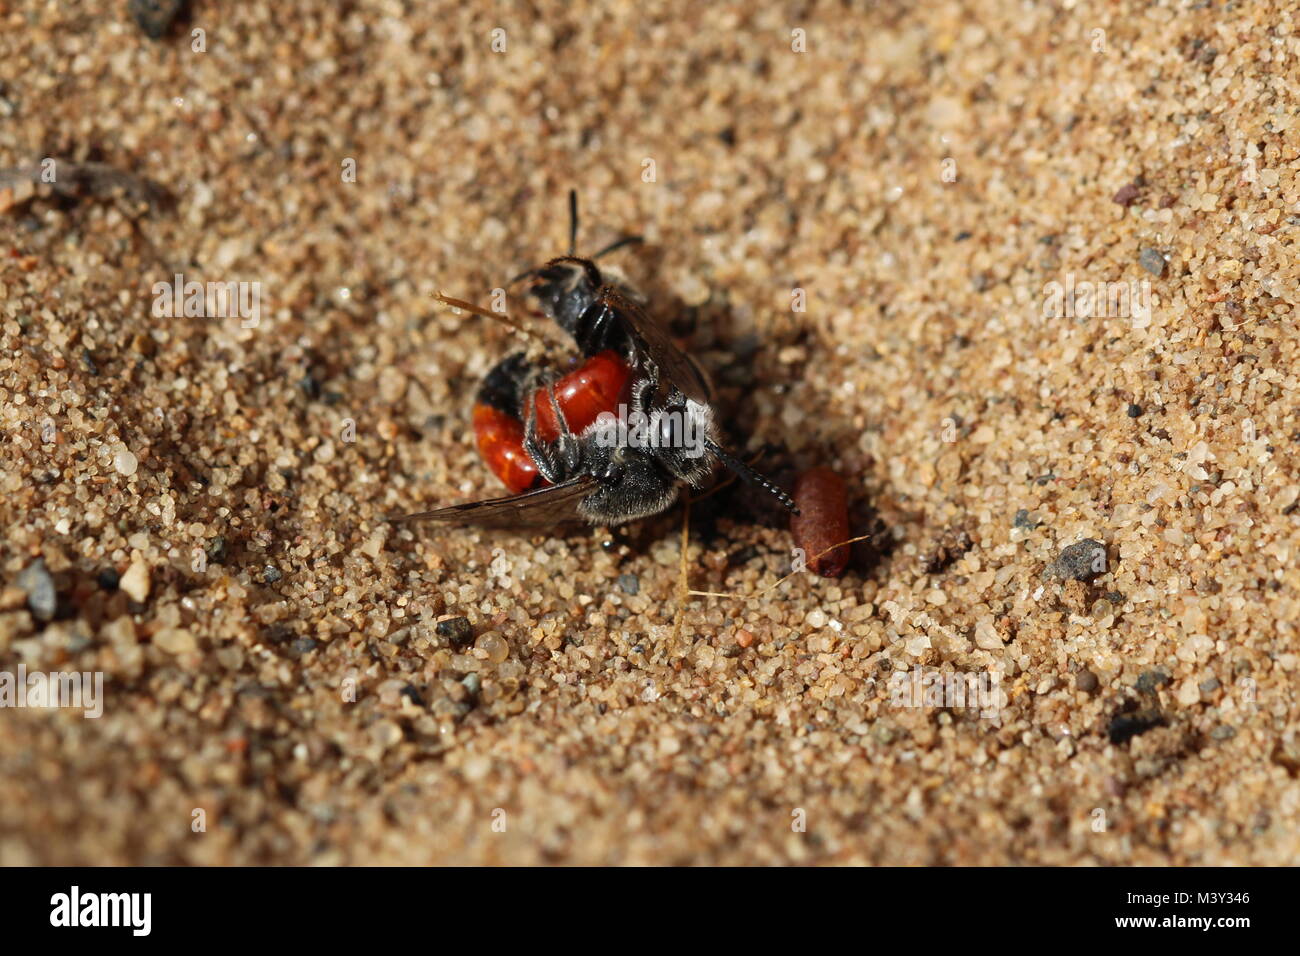 Il corteggiamento e il comportamento di accoppiamento di Sphecodes pellucidus (o la buca di sabbia sangue-bee), una specie di ape solitaria trovati sulle dune di sabbia e la brughiera. Foto Stock